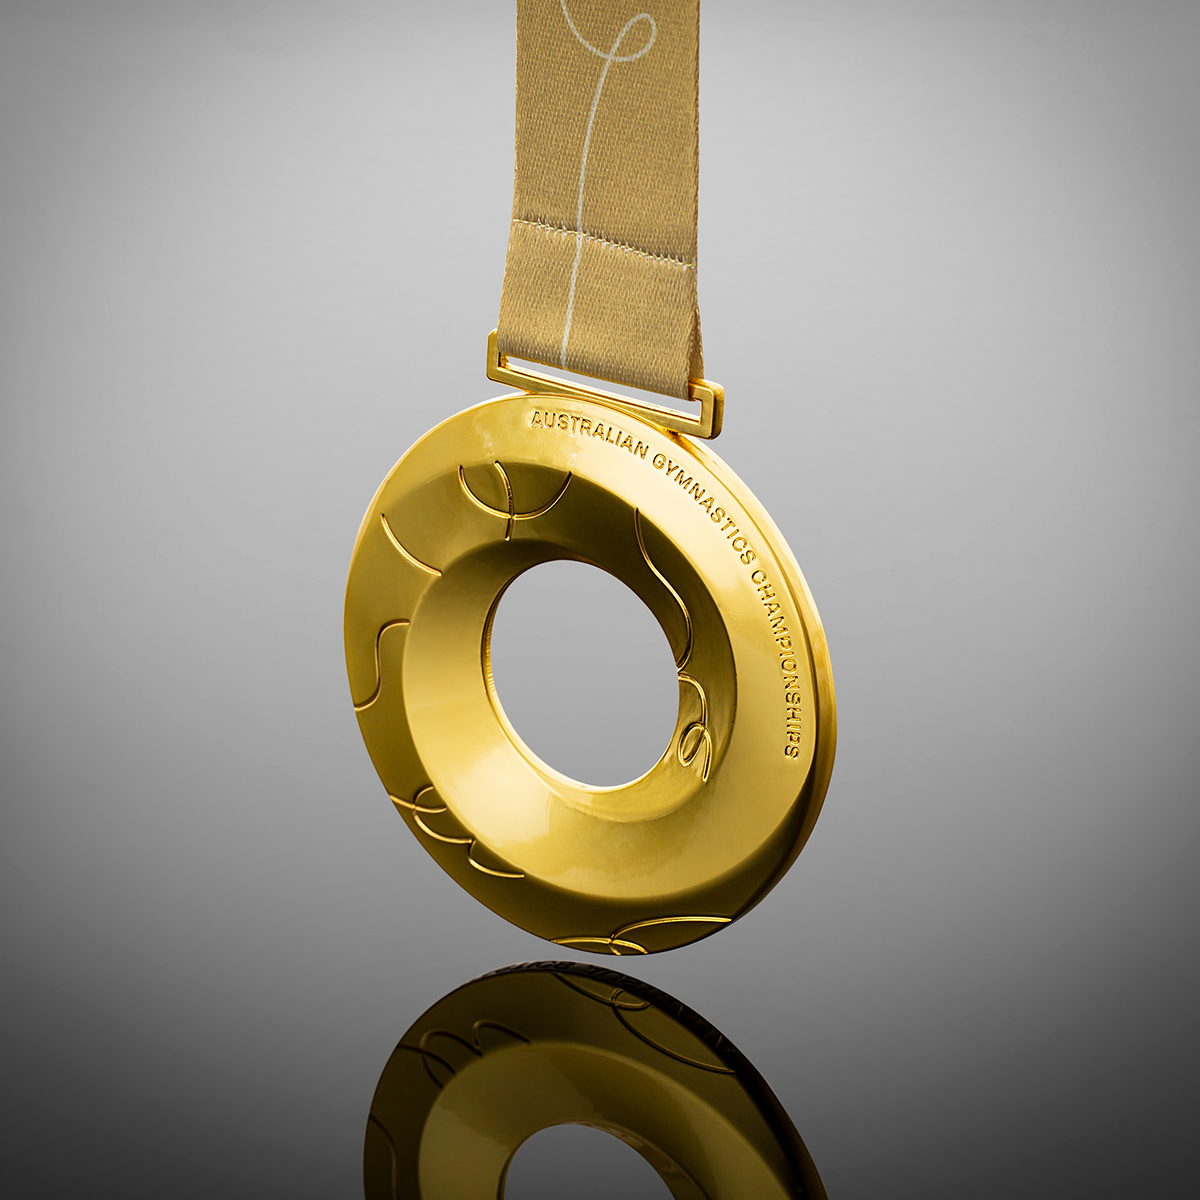 Event Design gold gymnastics impossible shape Medal medallion medals design sports